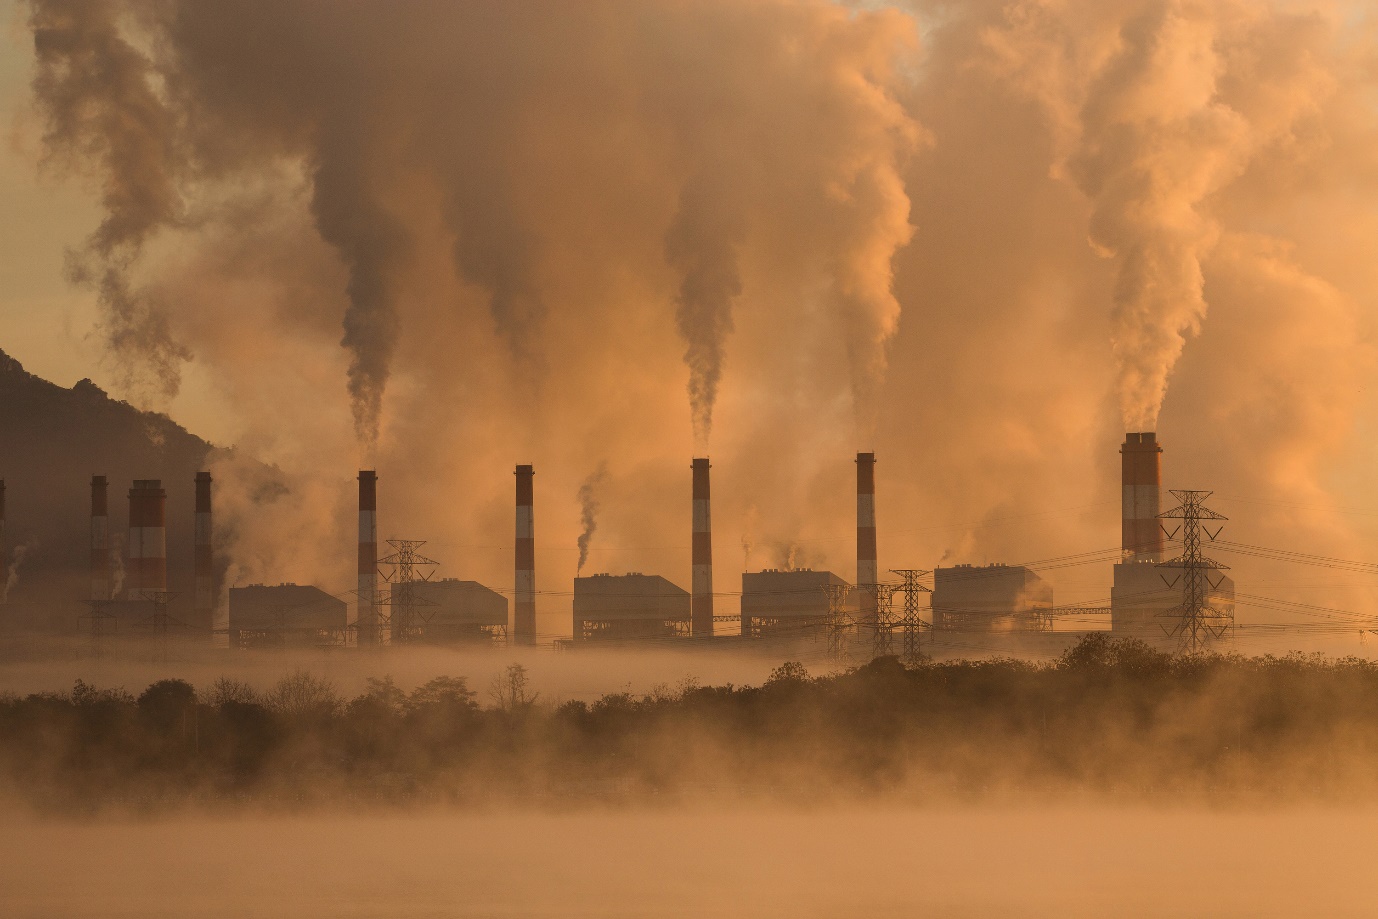 Ô nhiễm môi trường và hậu quả đáng lo ngại cho nhân loại